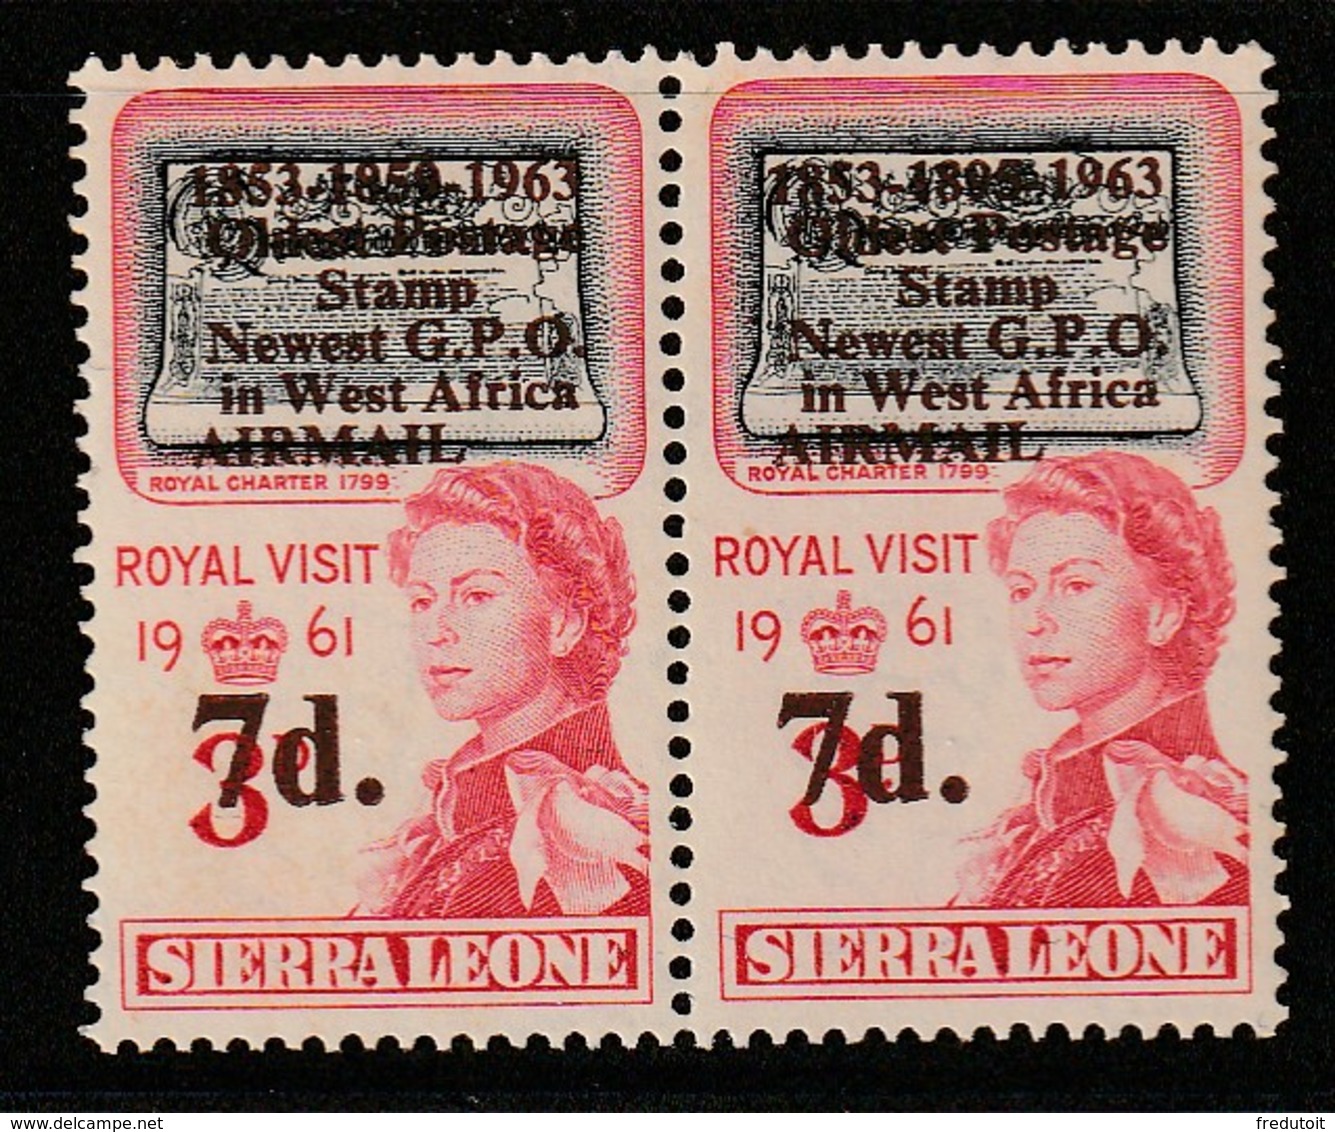 SIERRA LEONE - PA N°7 ** (1963) VARIETE : 1853-1895-1963 Au Lieu De 1863-1859-1963 - Sierra Leone (1961-...)